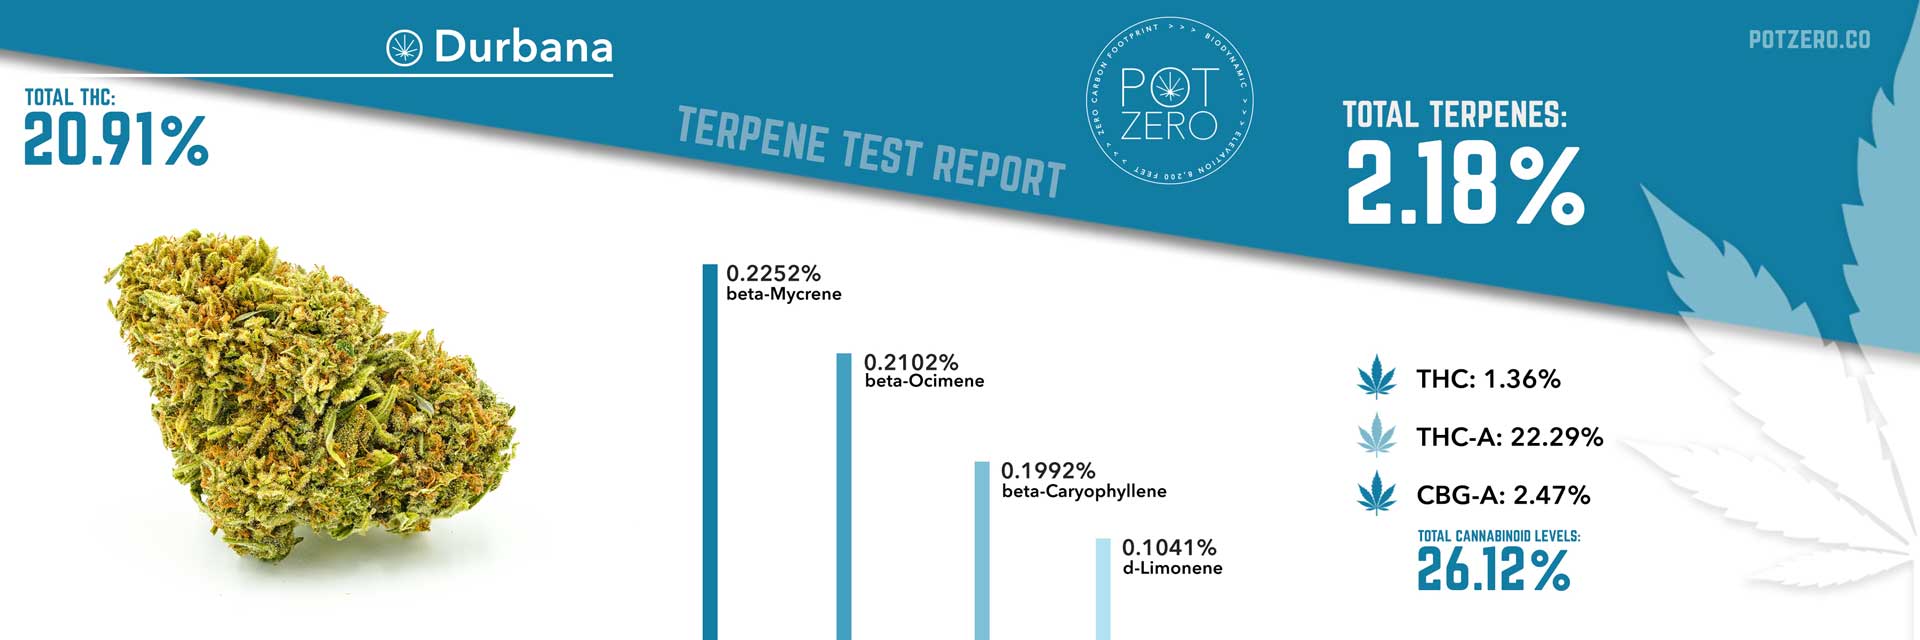 durbana strain terpene test report